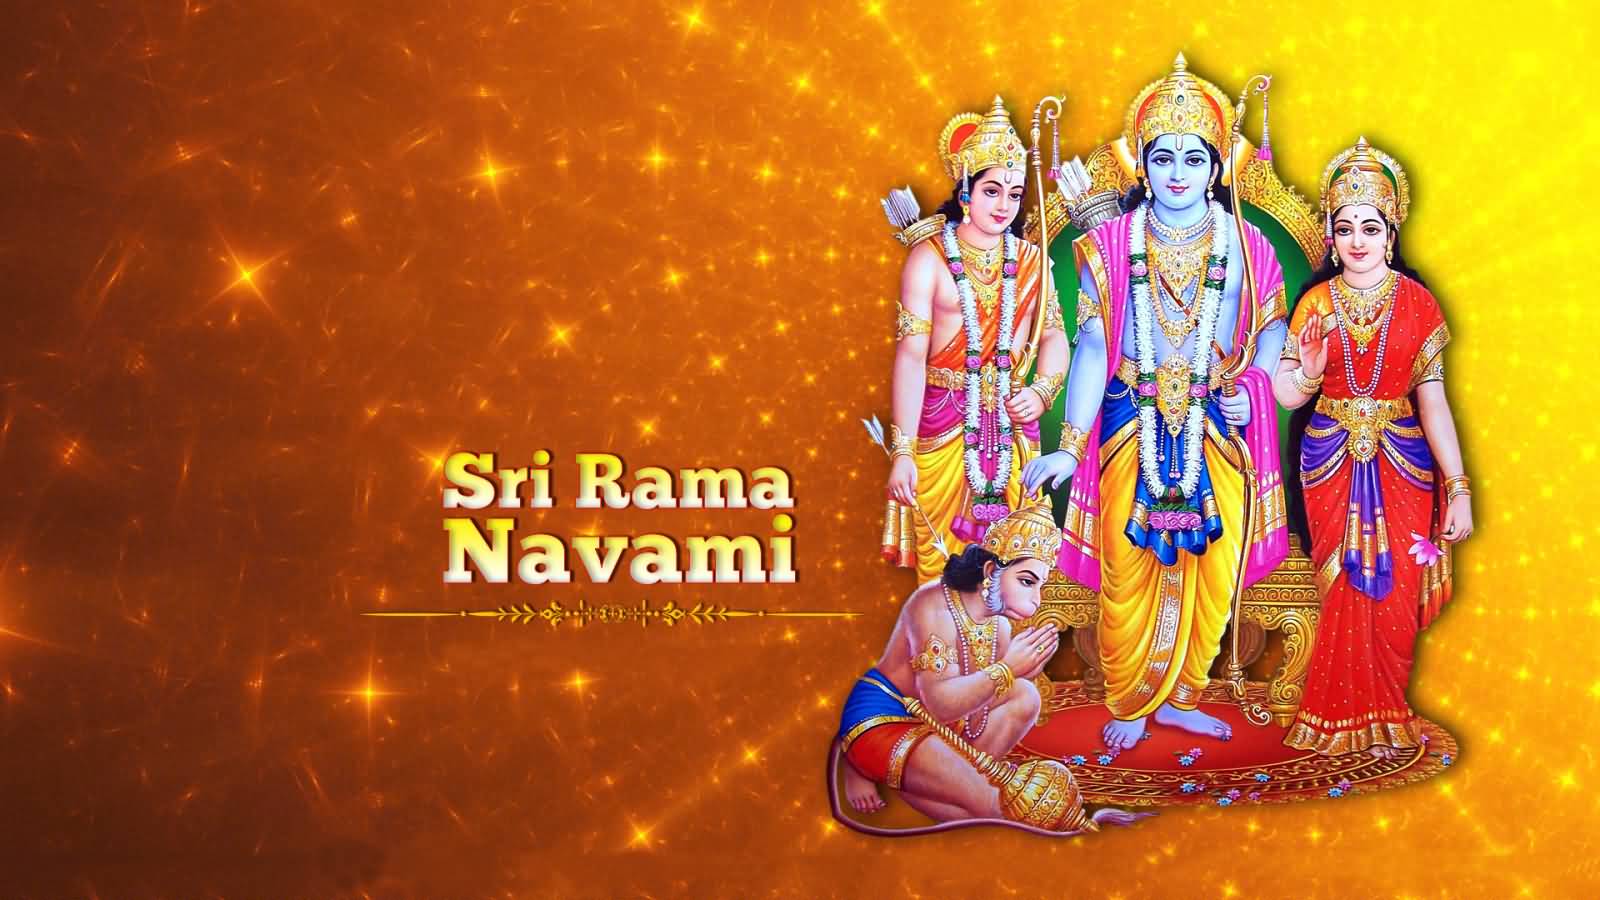 Sri Ram Navami 2017